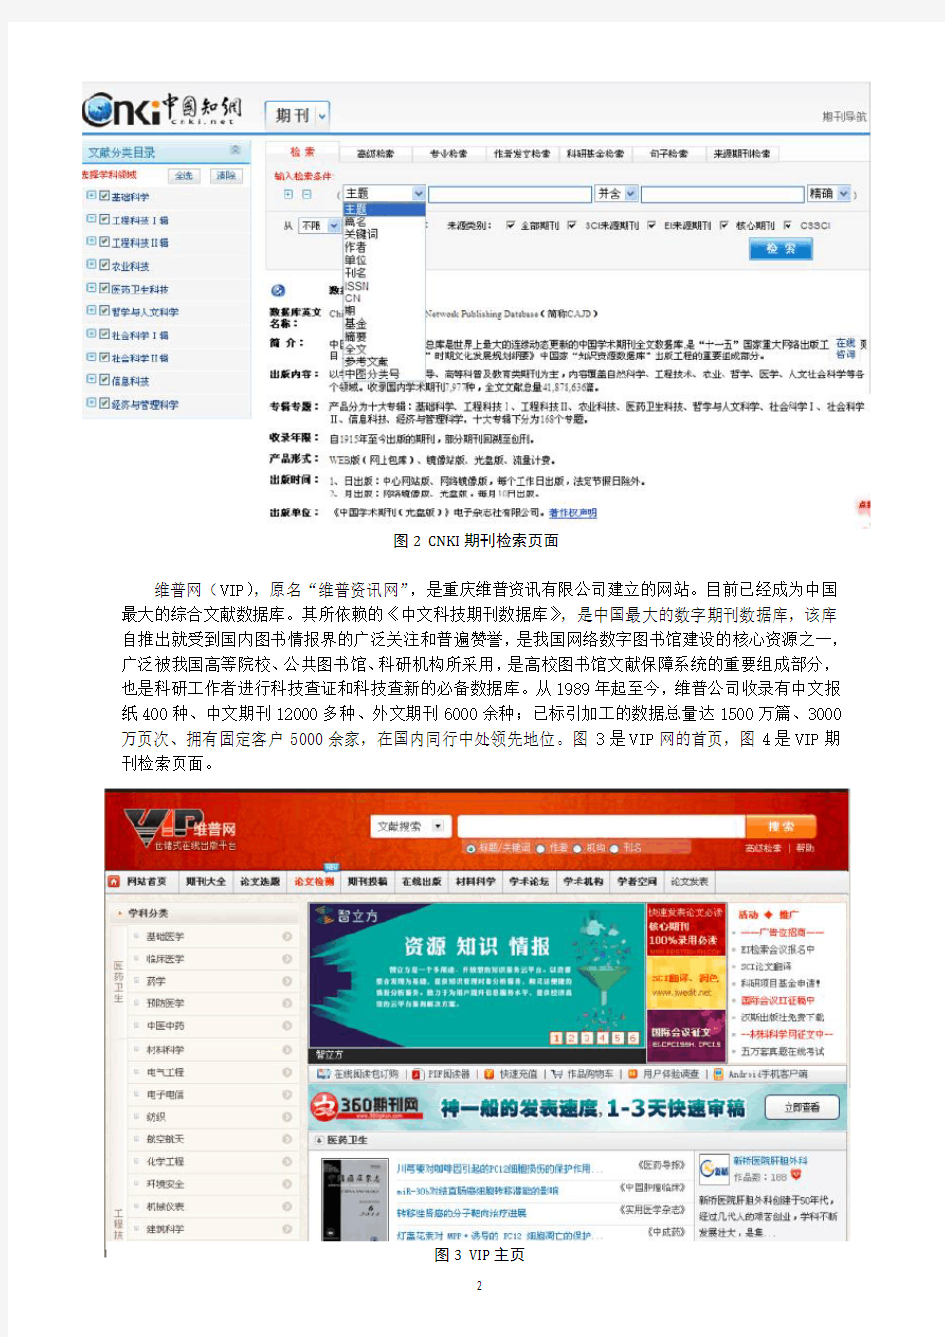 中国知网、维普网、万方数据的期刊检索系统用户界面的比较